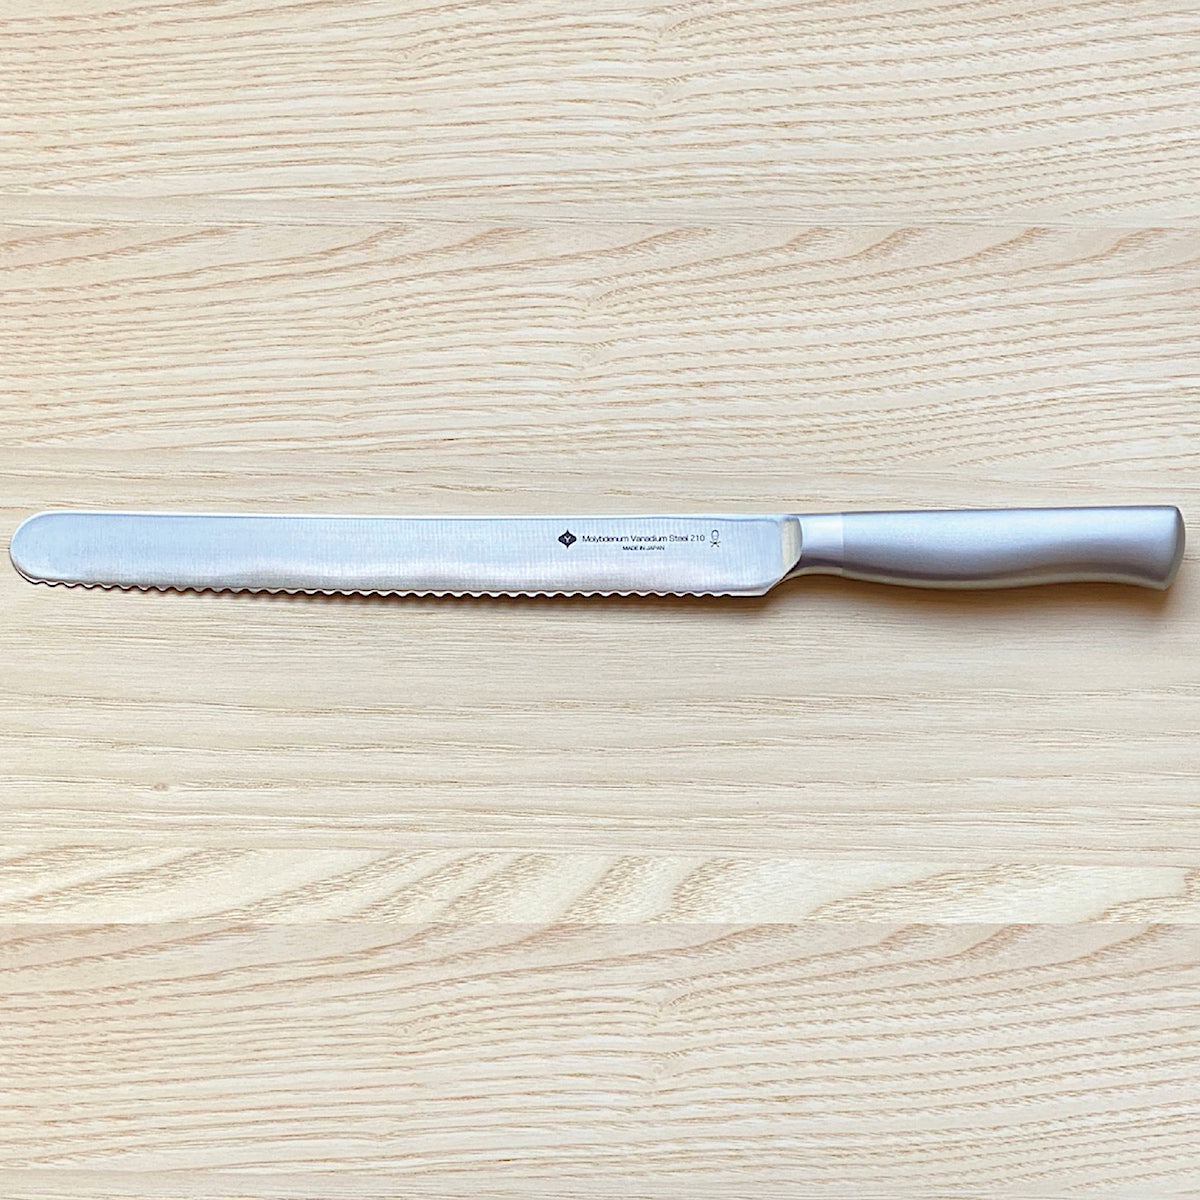 Brotmesser aus Japan | 210mm | Rostfreier Molybdenum Vanadium-Stahl